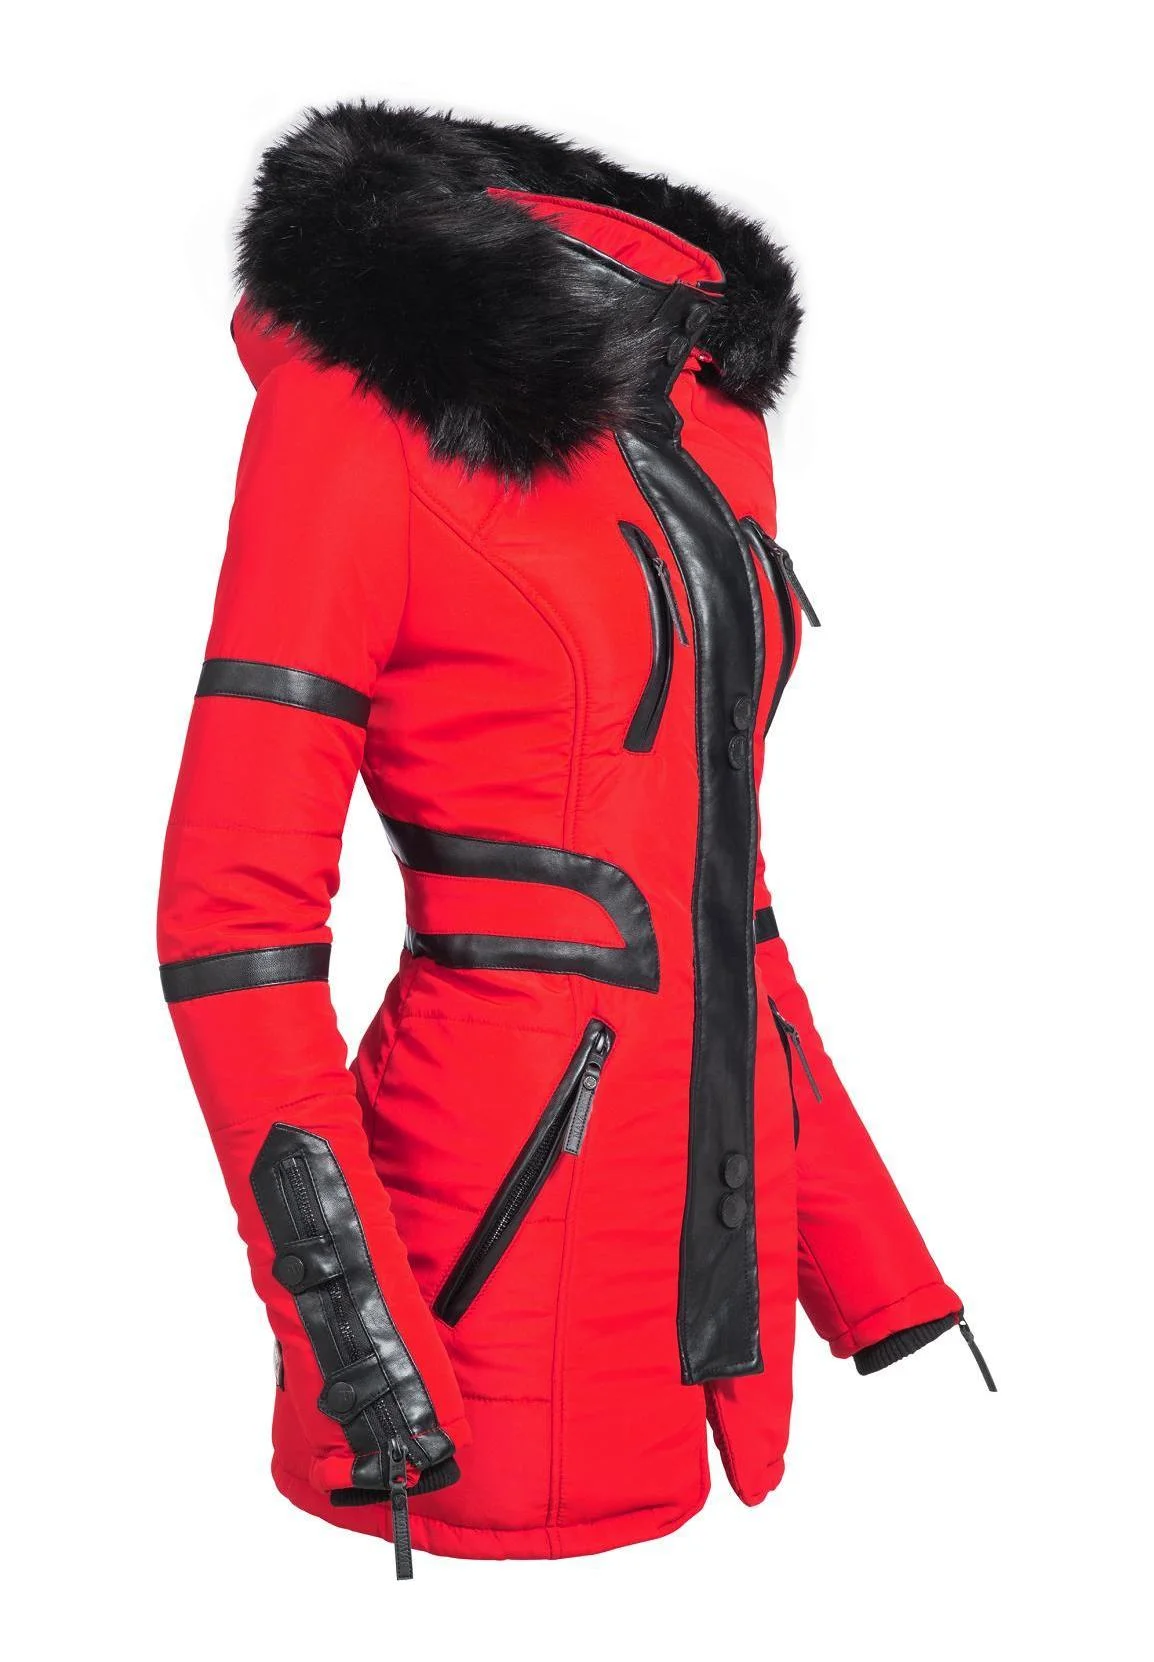 MOON - Winter coat